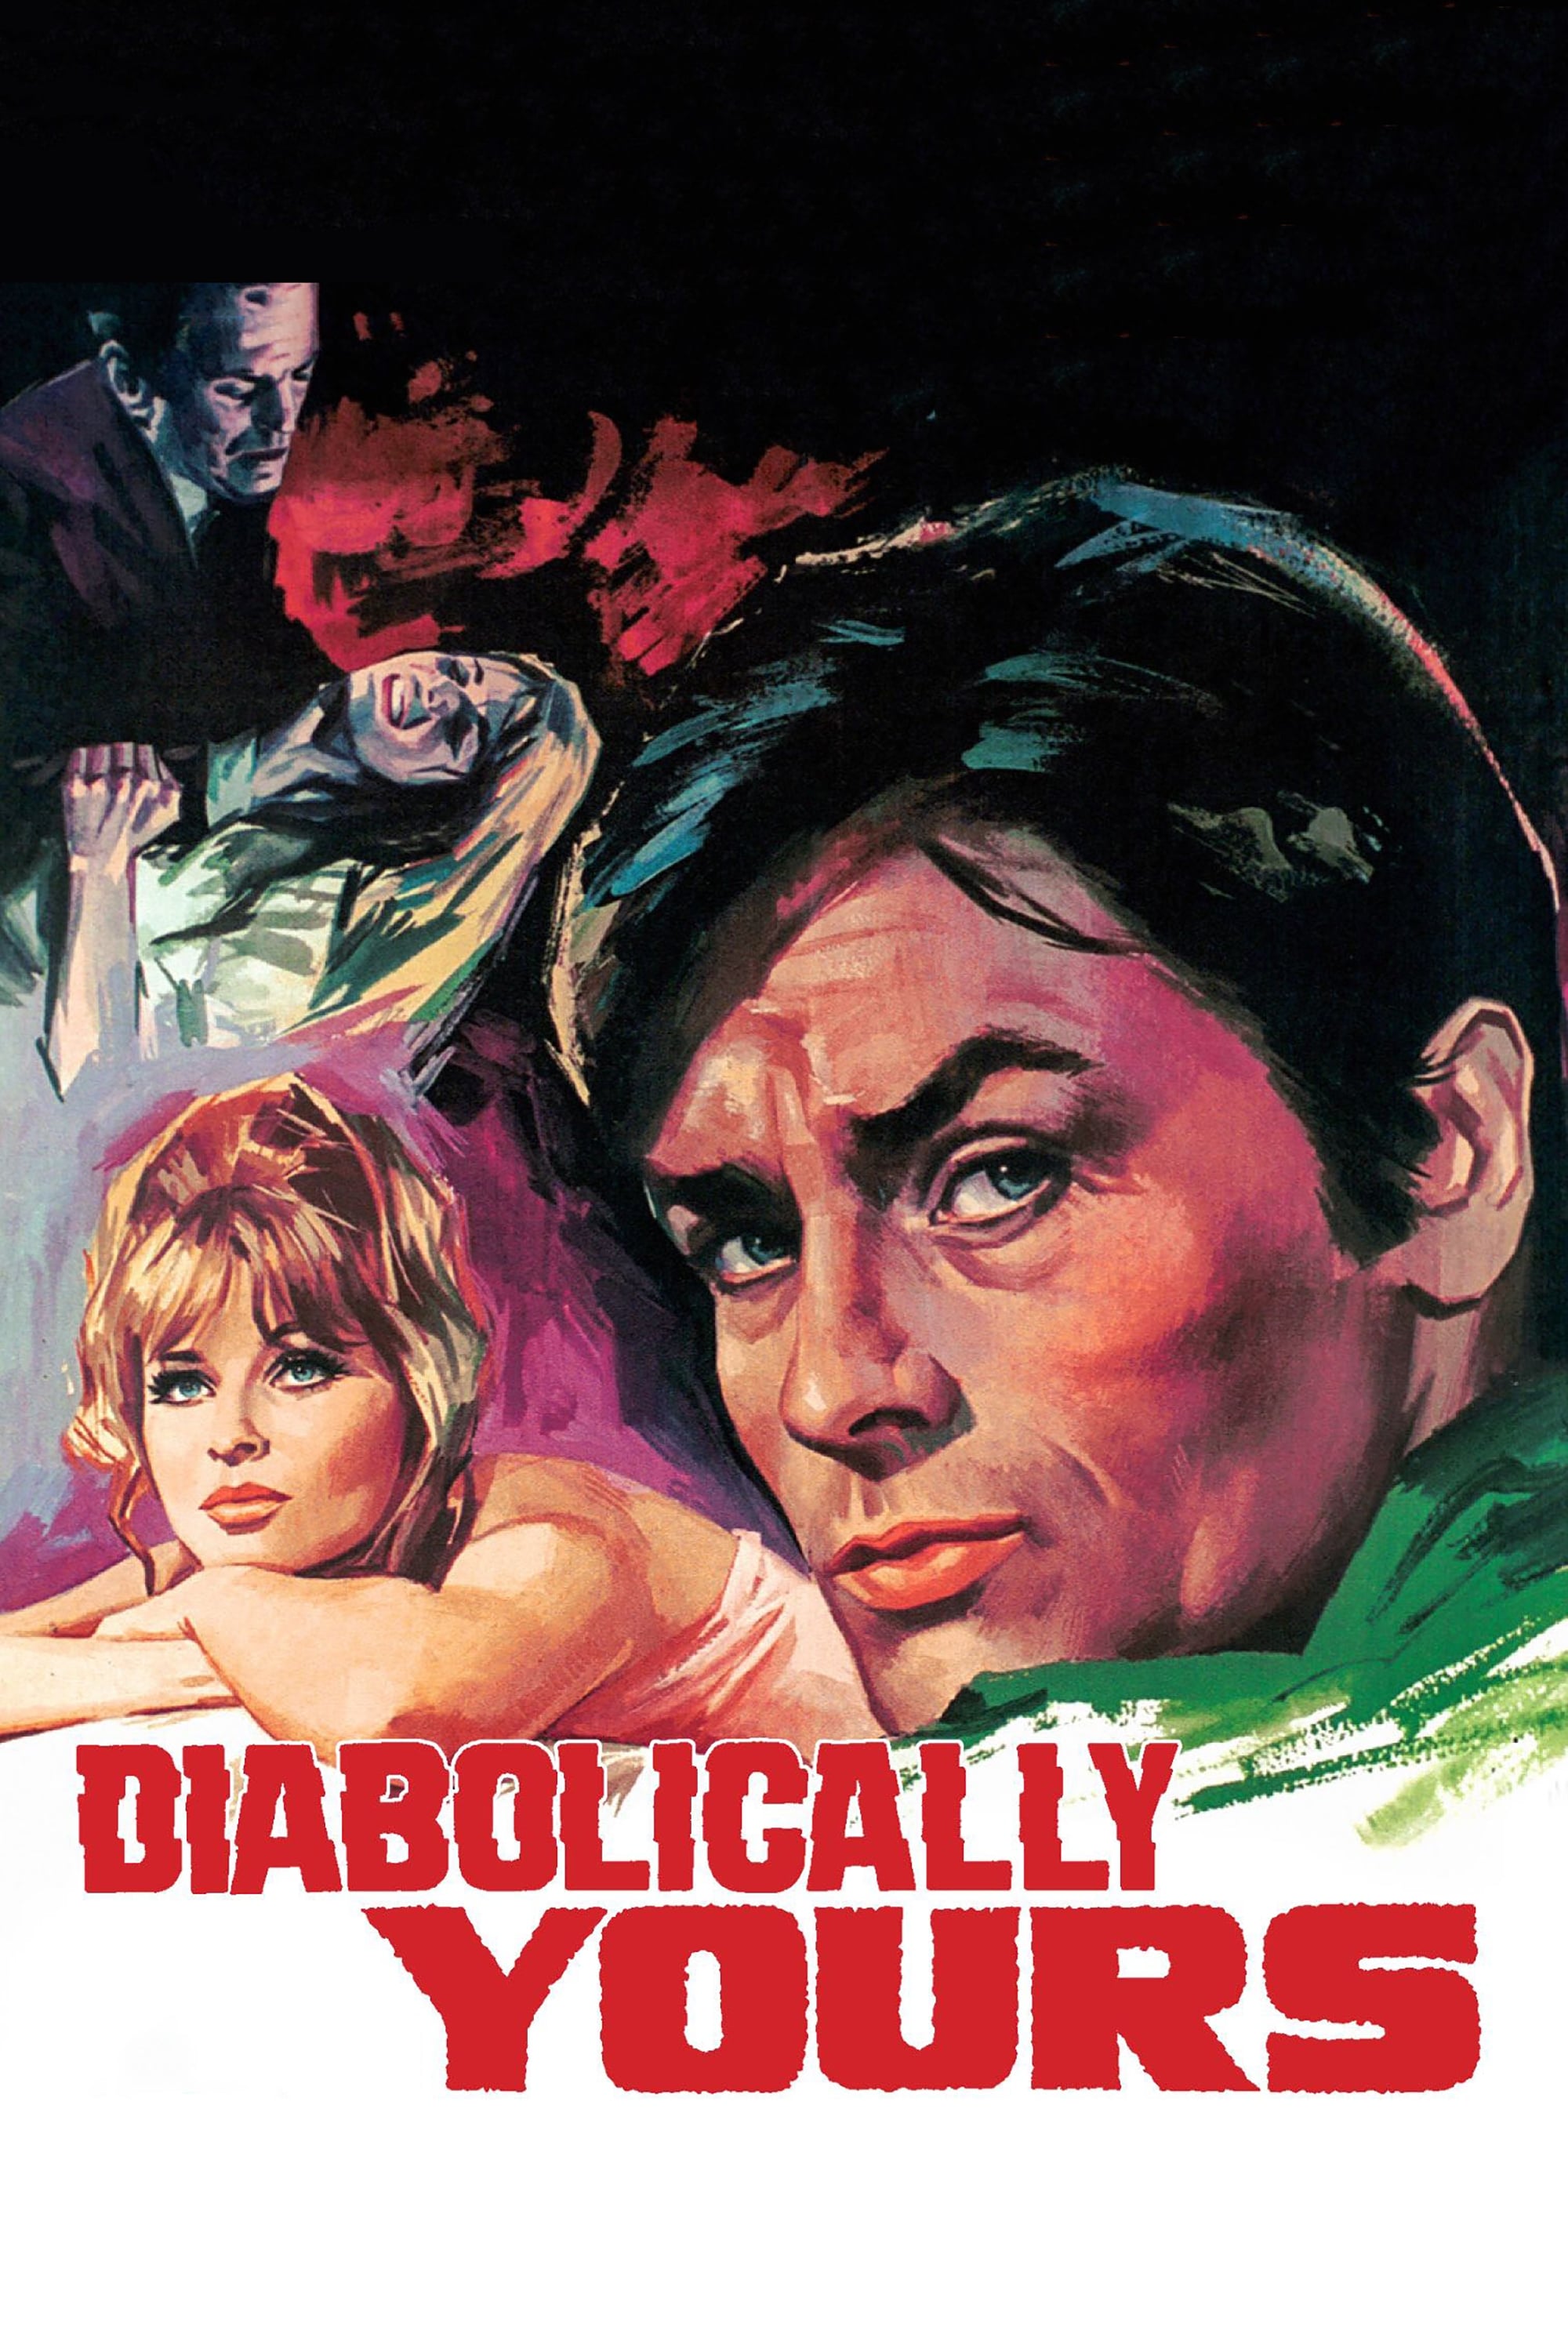 Diaboliquement vôtre (1967)